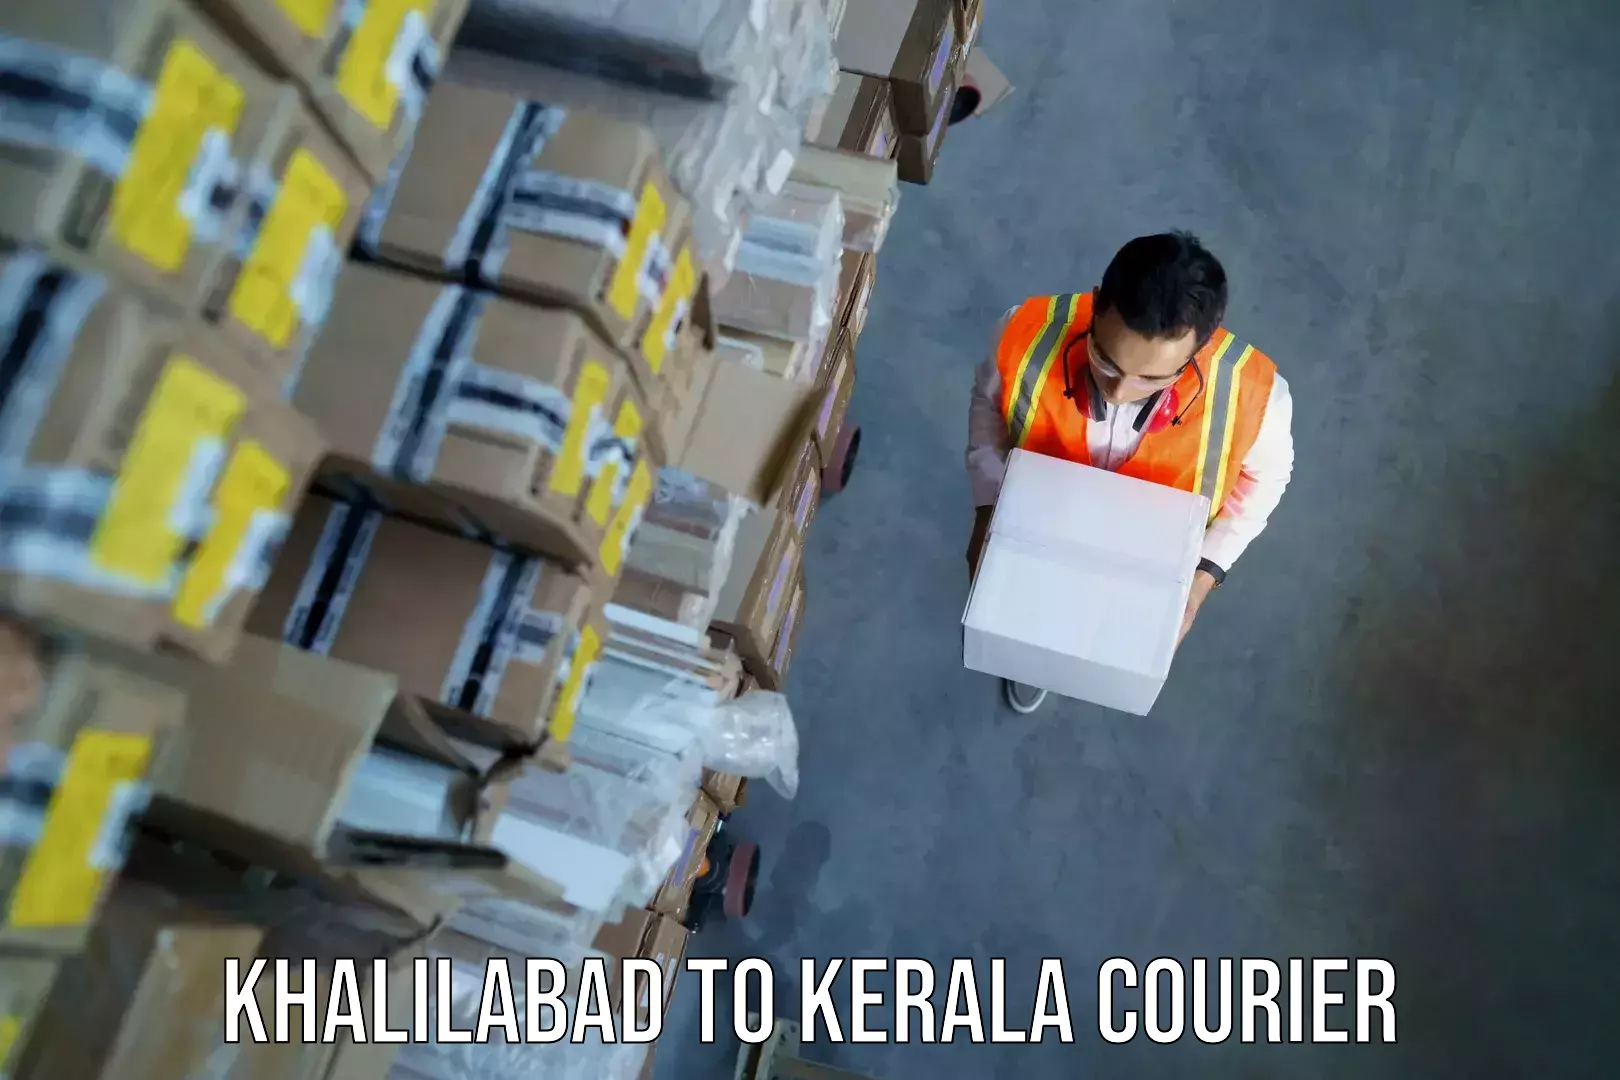 Baggage shipping experts Khalilabad to Ponnani